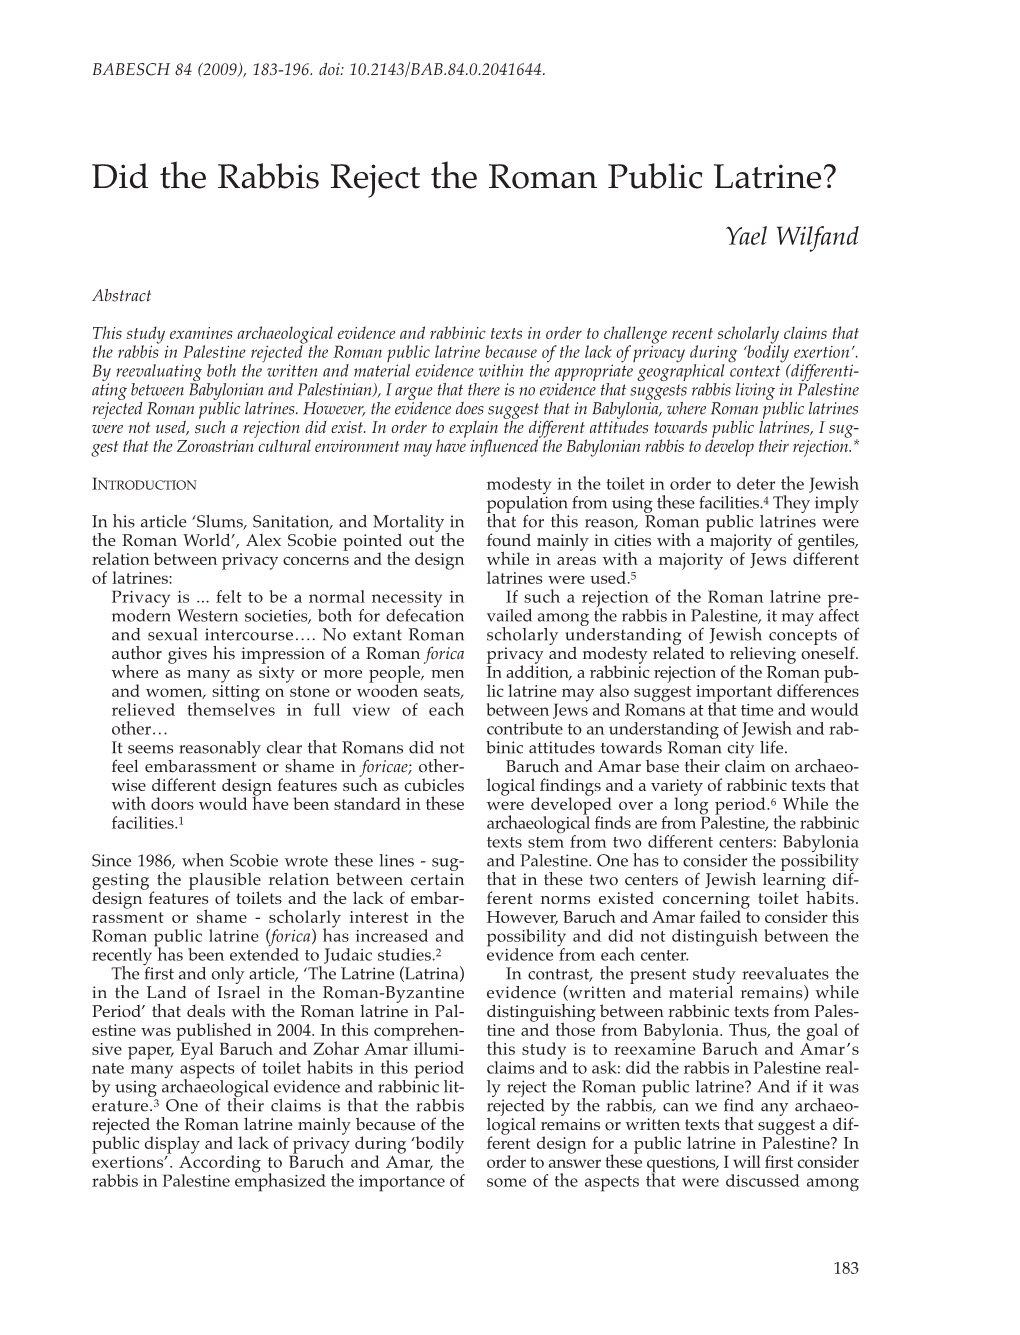 Did the Rabbis Reject the Roman Public Latrine?